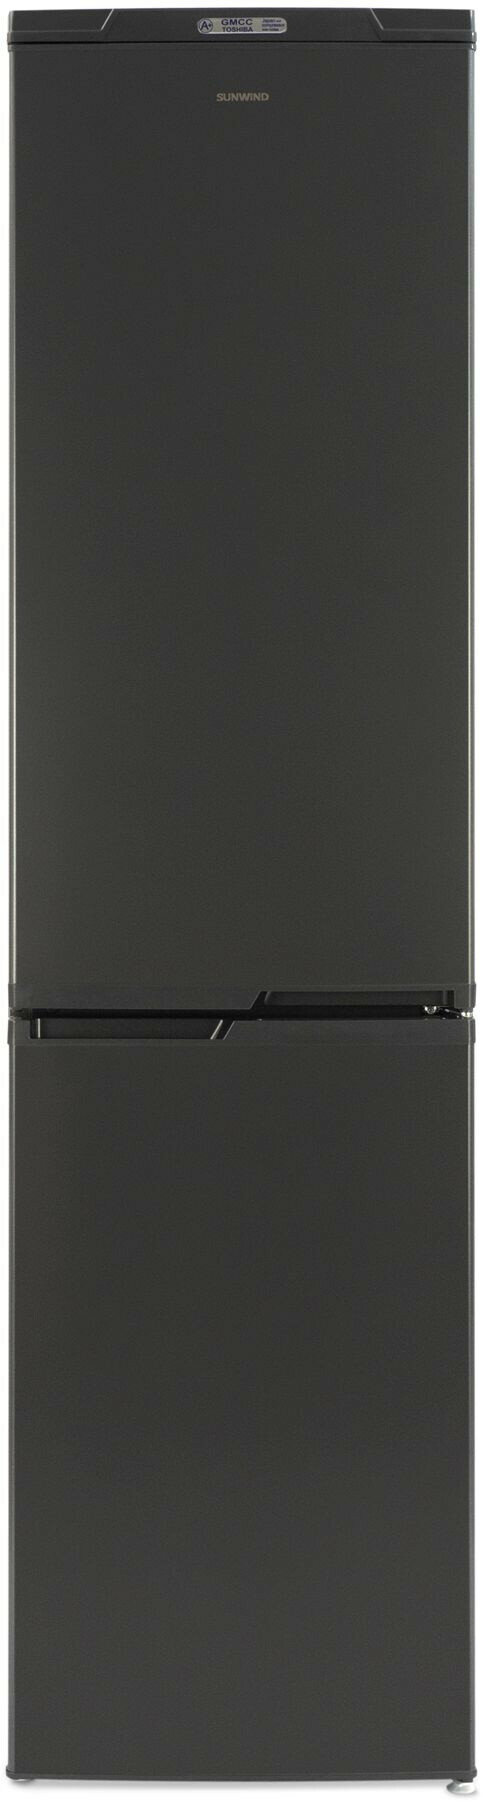 Холодильник SunWind SCC410 графит